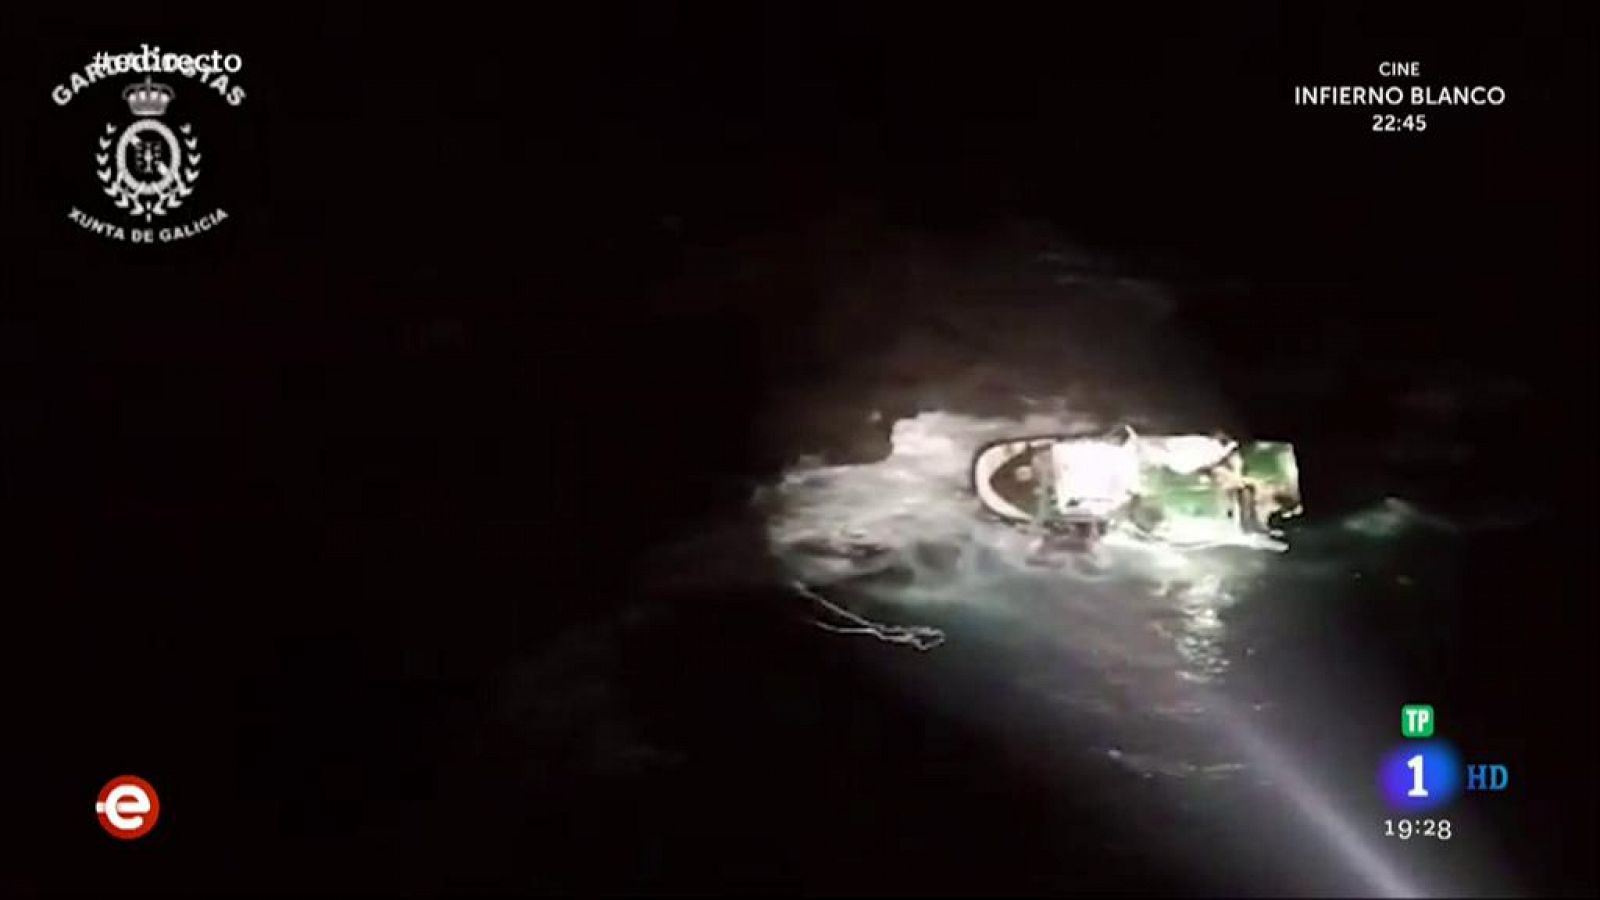 España Directo - Un tripulante fallecido tras encallarse un barco pesquero en la Costa de Castro de Baroña, A Coruña